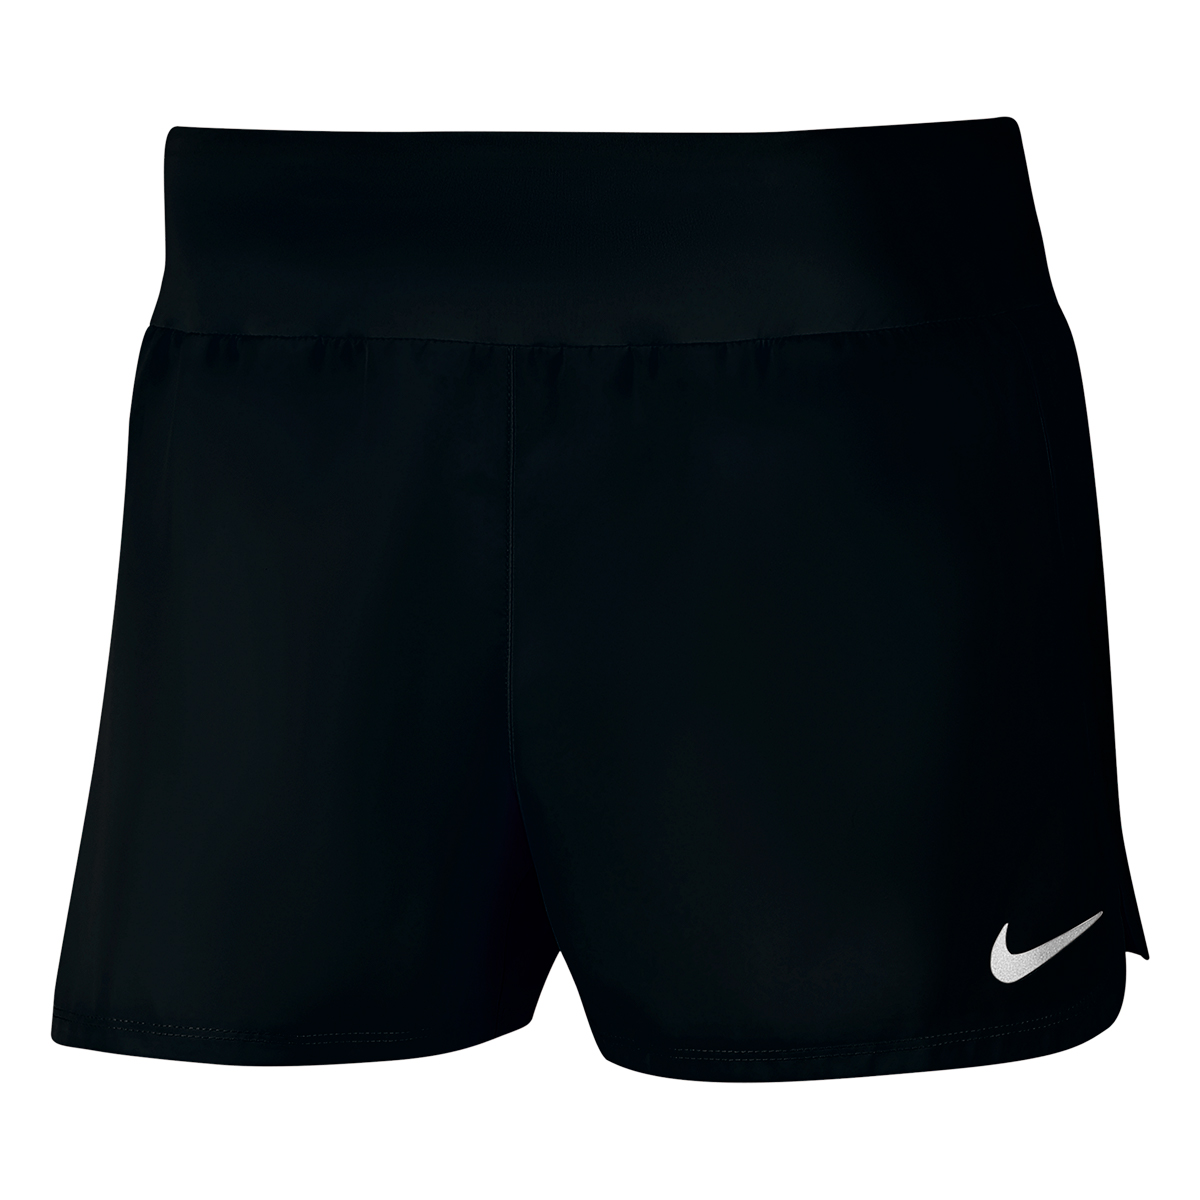 Nike 3" Shorts, , large image number null